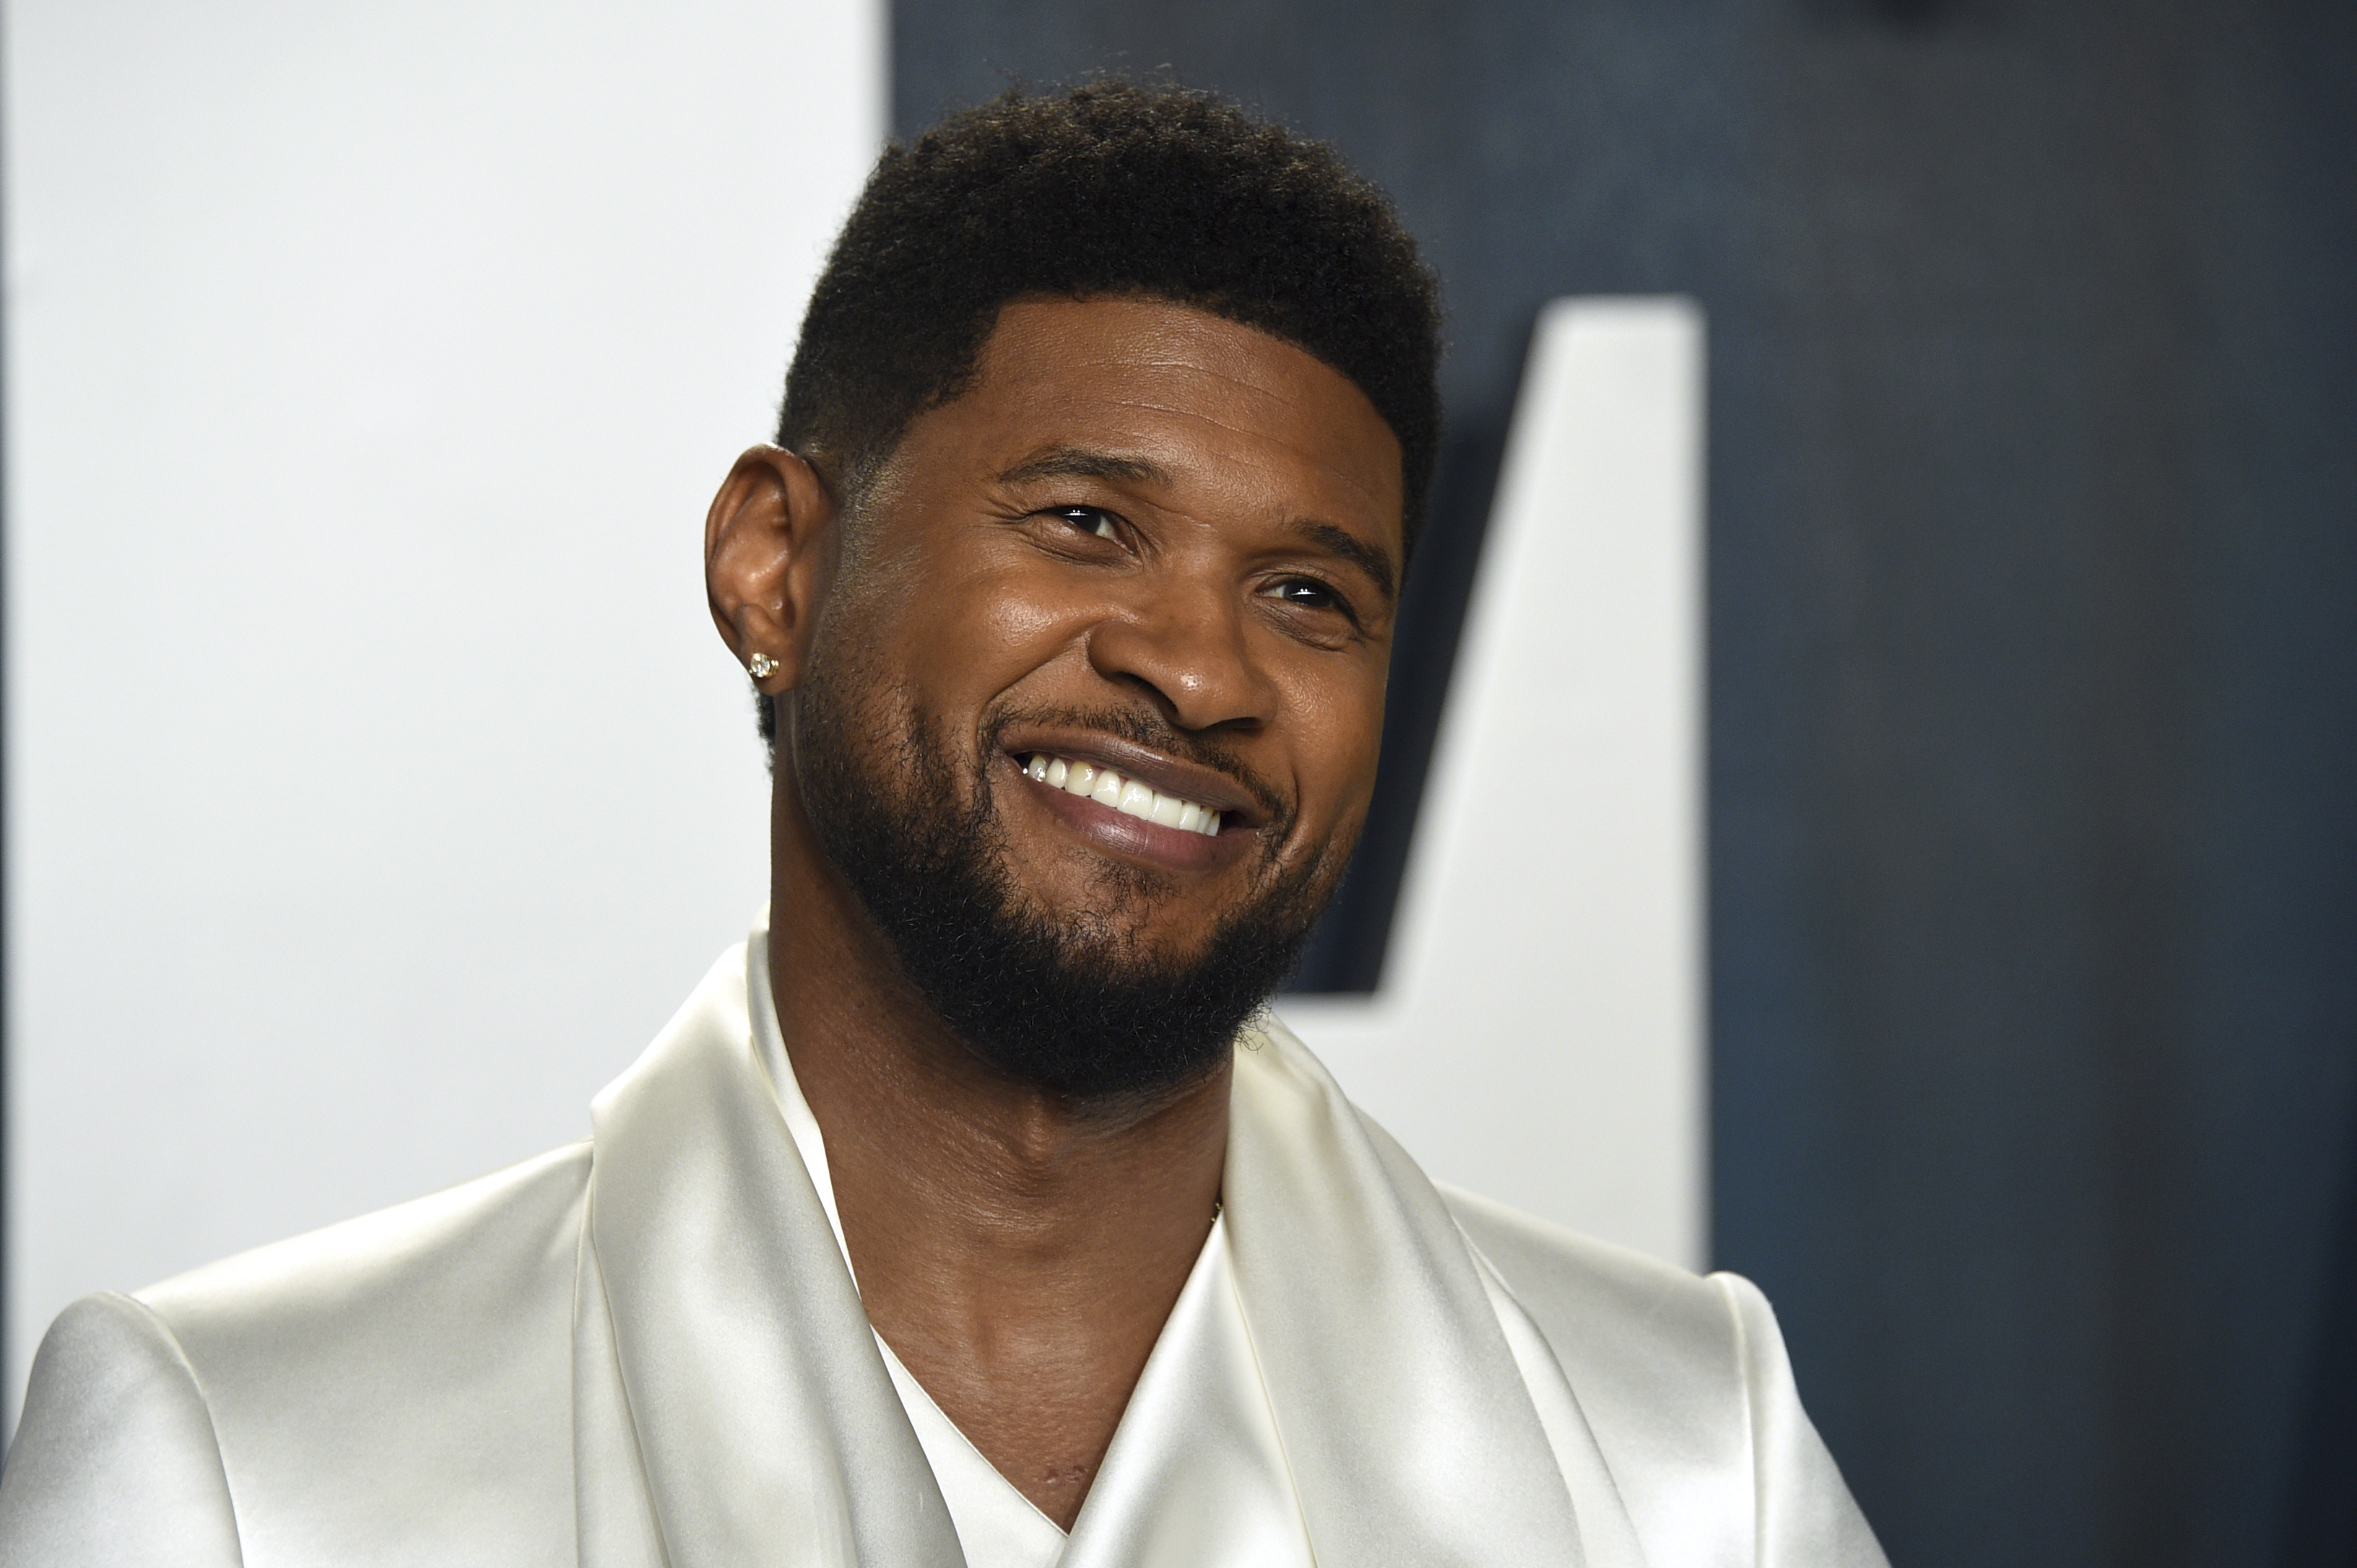 Usher will headline the Super Bowl next year